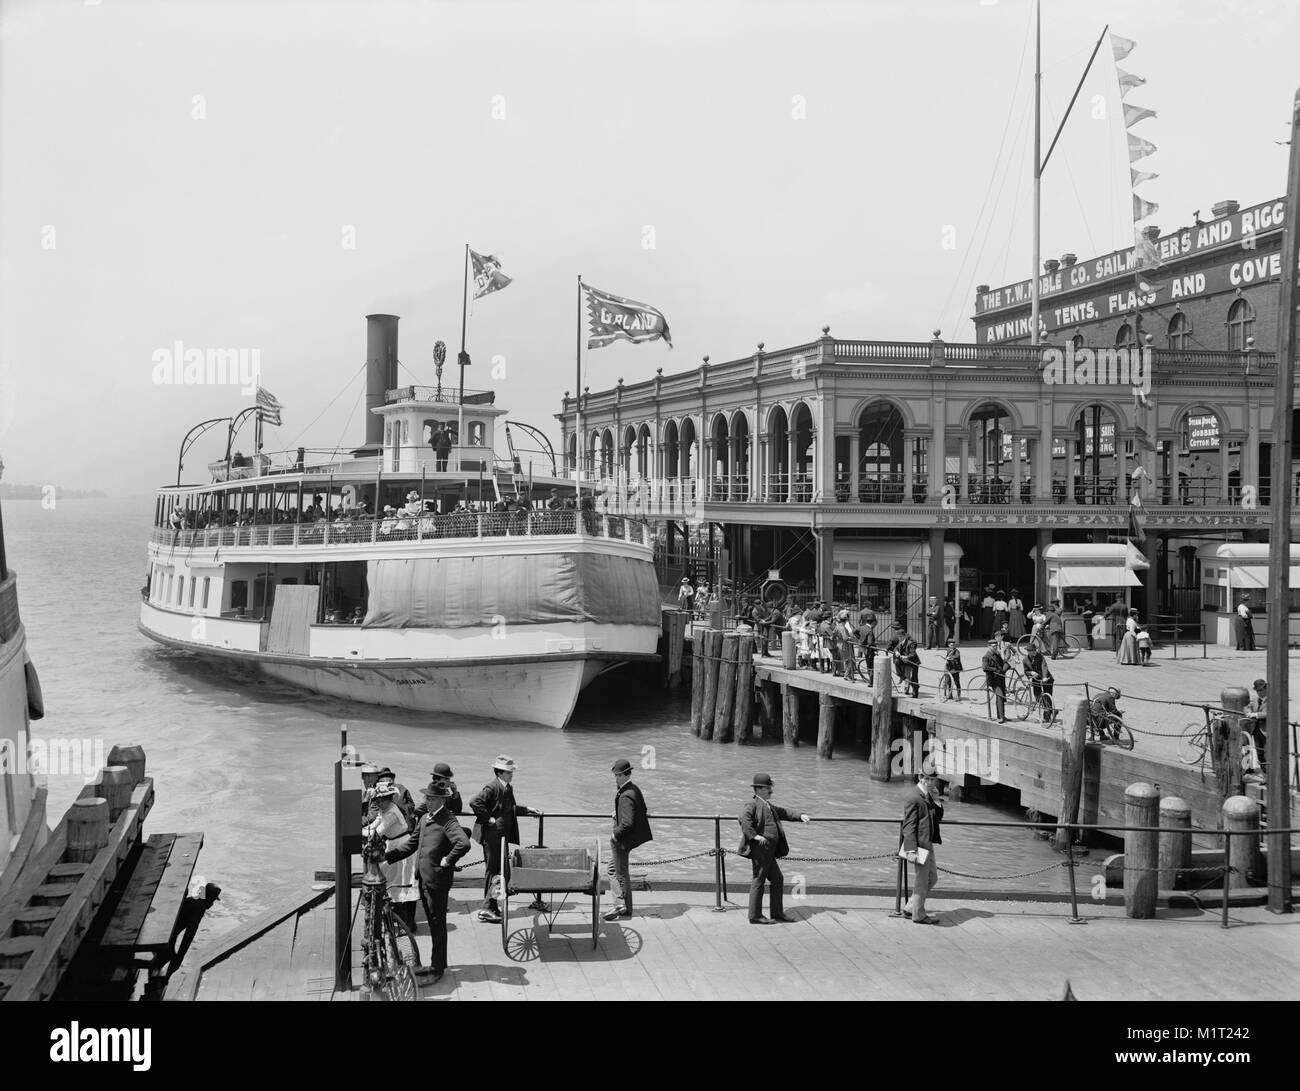 Ferry à quai, Belle Isle Park, Détroit, Michigan, USA, Lycurgue S. Glover pour Detroit Publishing Company, 1900 Banque D'Images